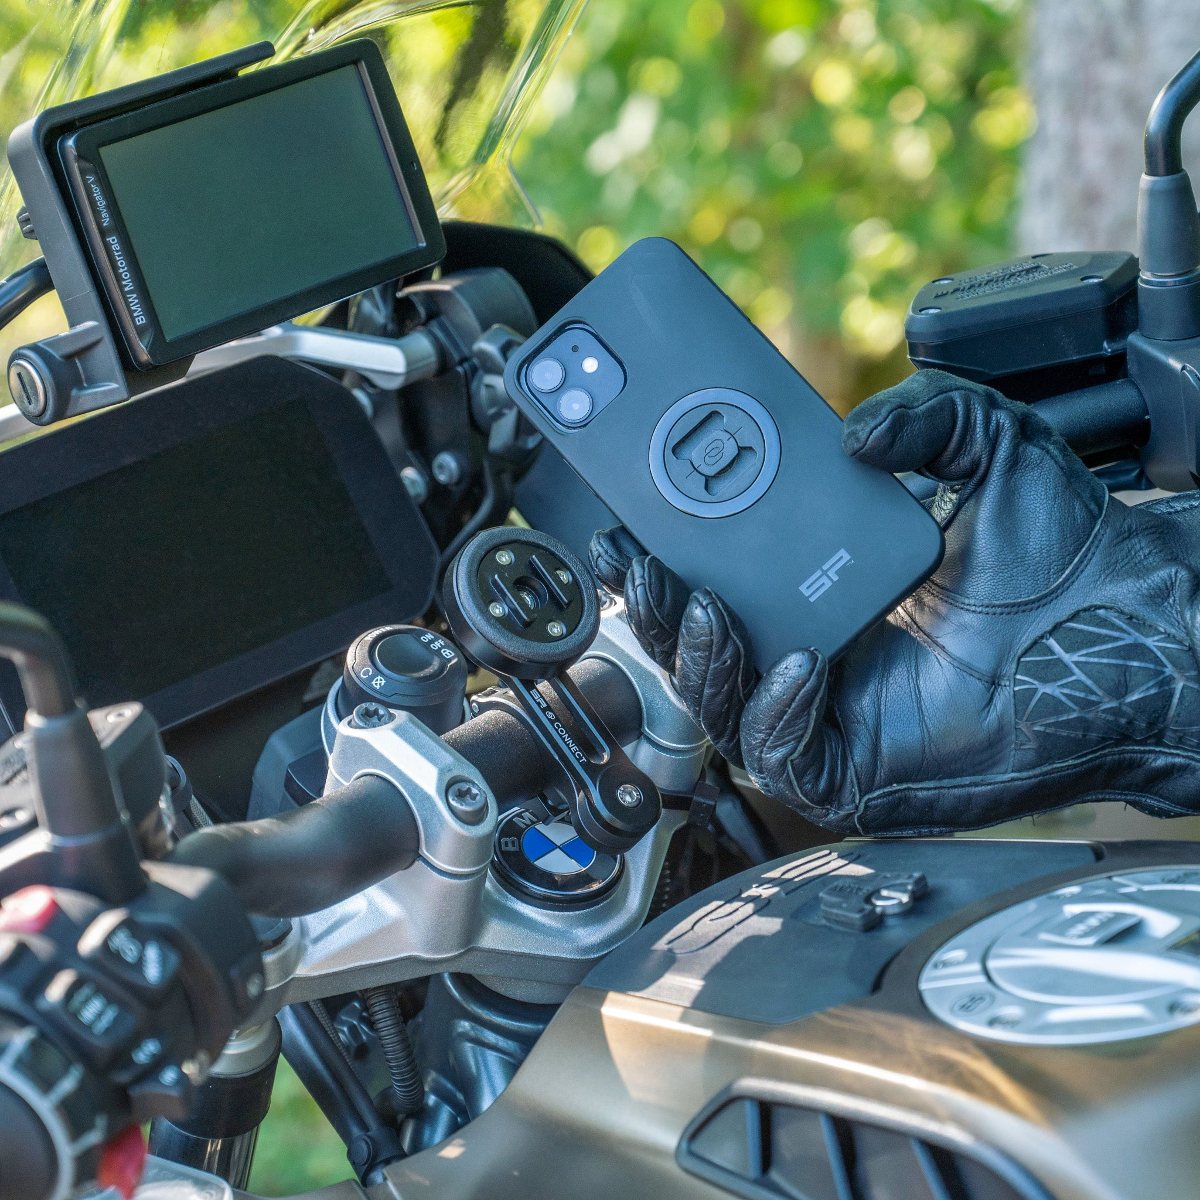 Amortisseur antivibration pour support téléphone - Équipement moto